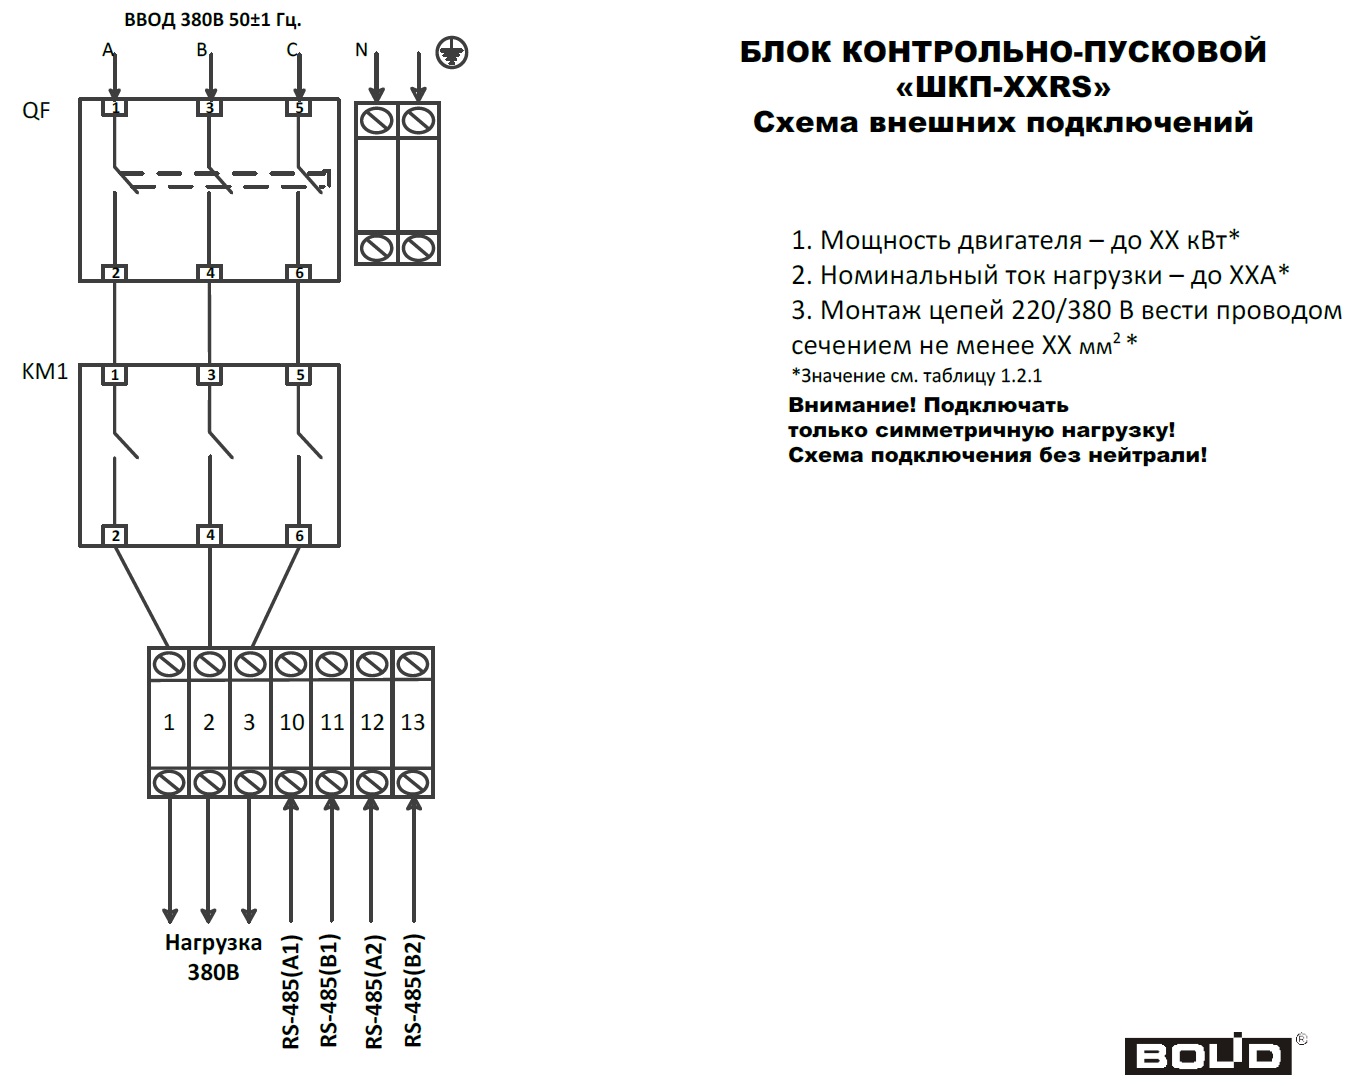 Схема подключения блоков ШКП-ххRS (М) при 380В.